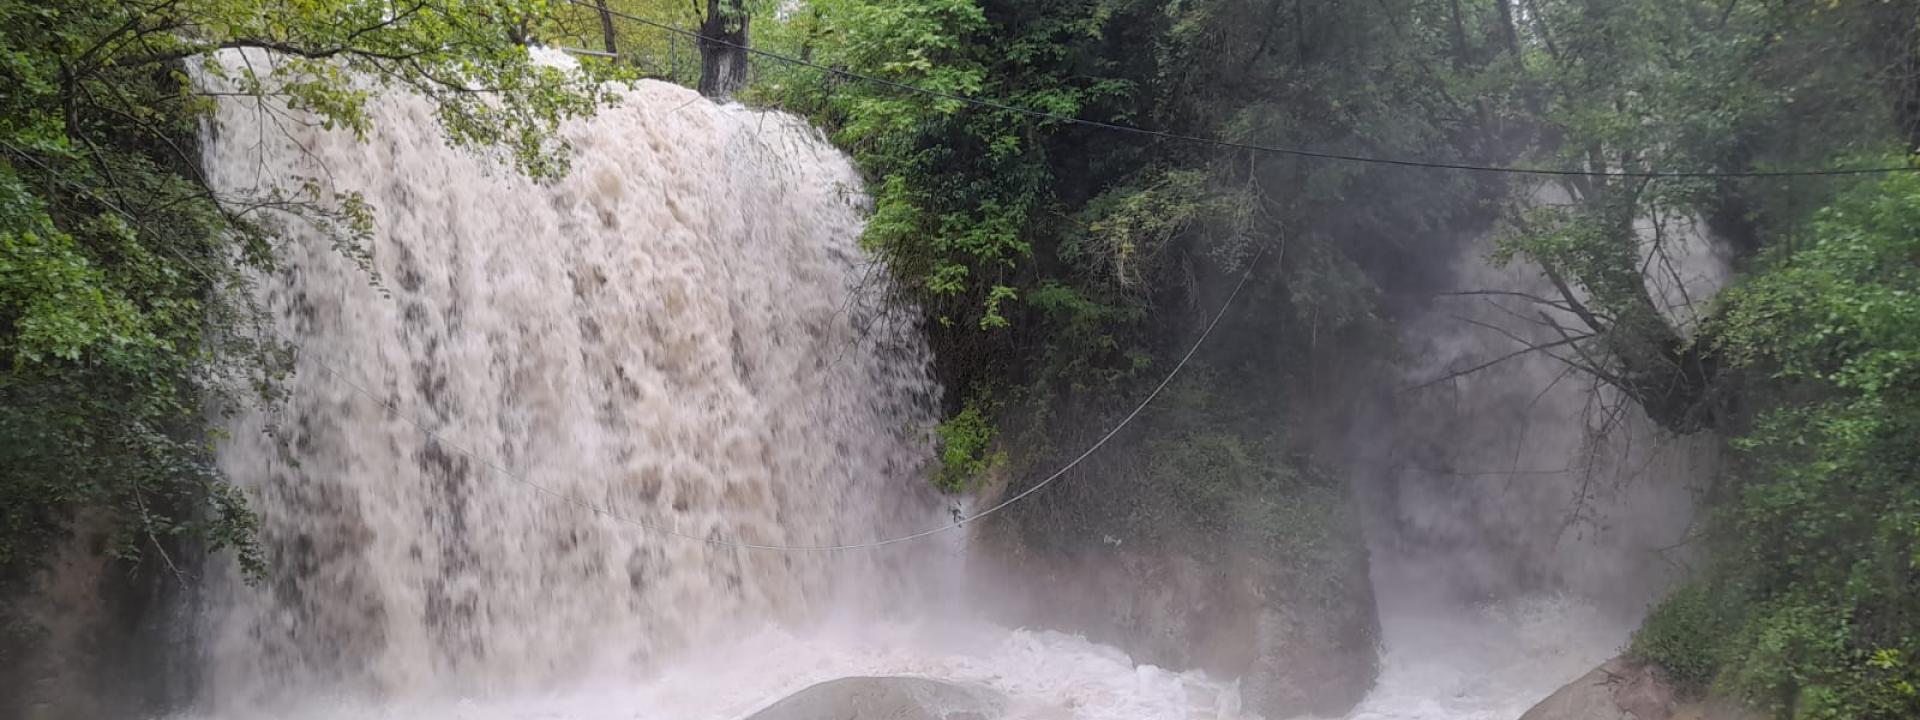 Marche - Tantissima acqua alle Cascate Perdute di Sarnano: i visitatori invitati a prestare attenzione (VIDEO)